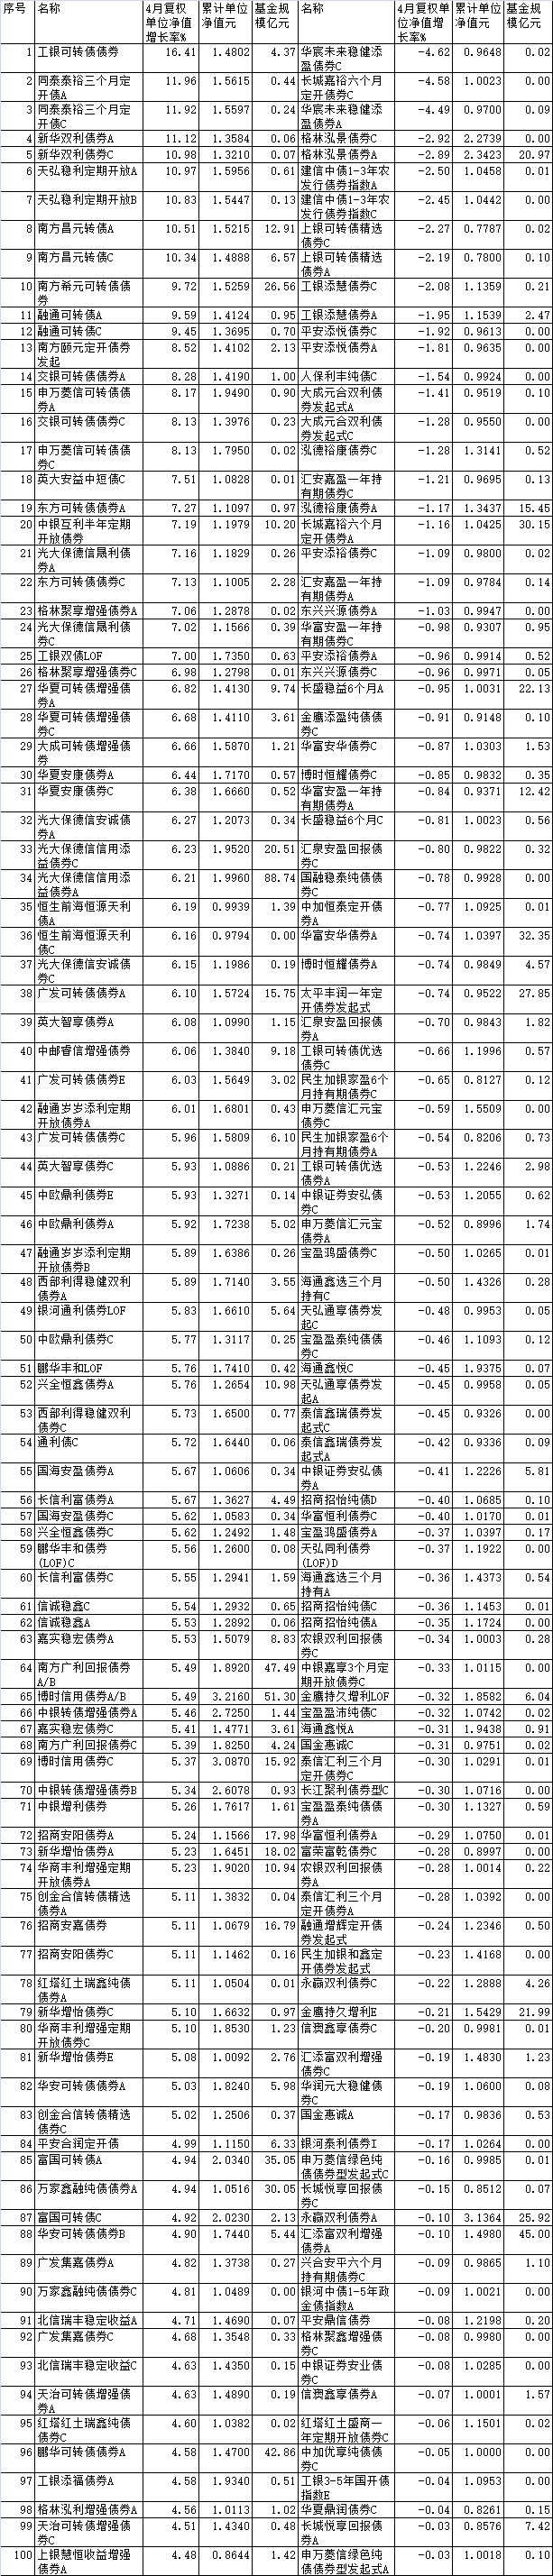 前4月债基普涨 工银瑞信同泰新华天弘等产品涨幅超10%